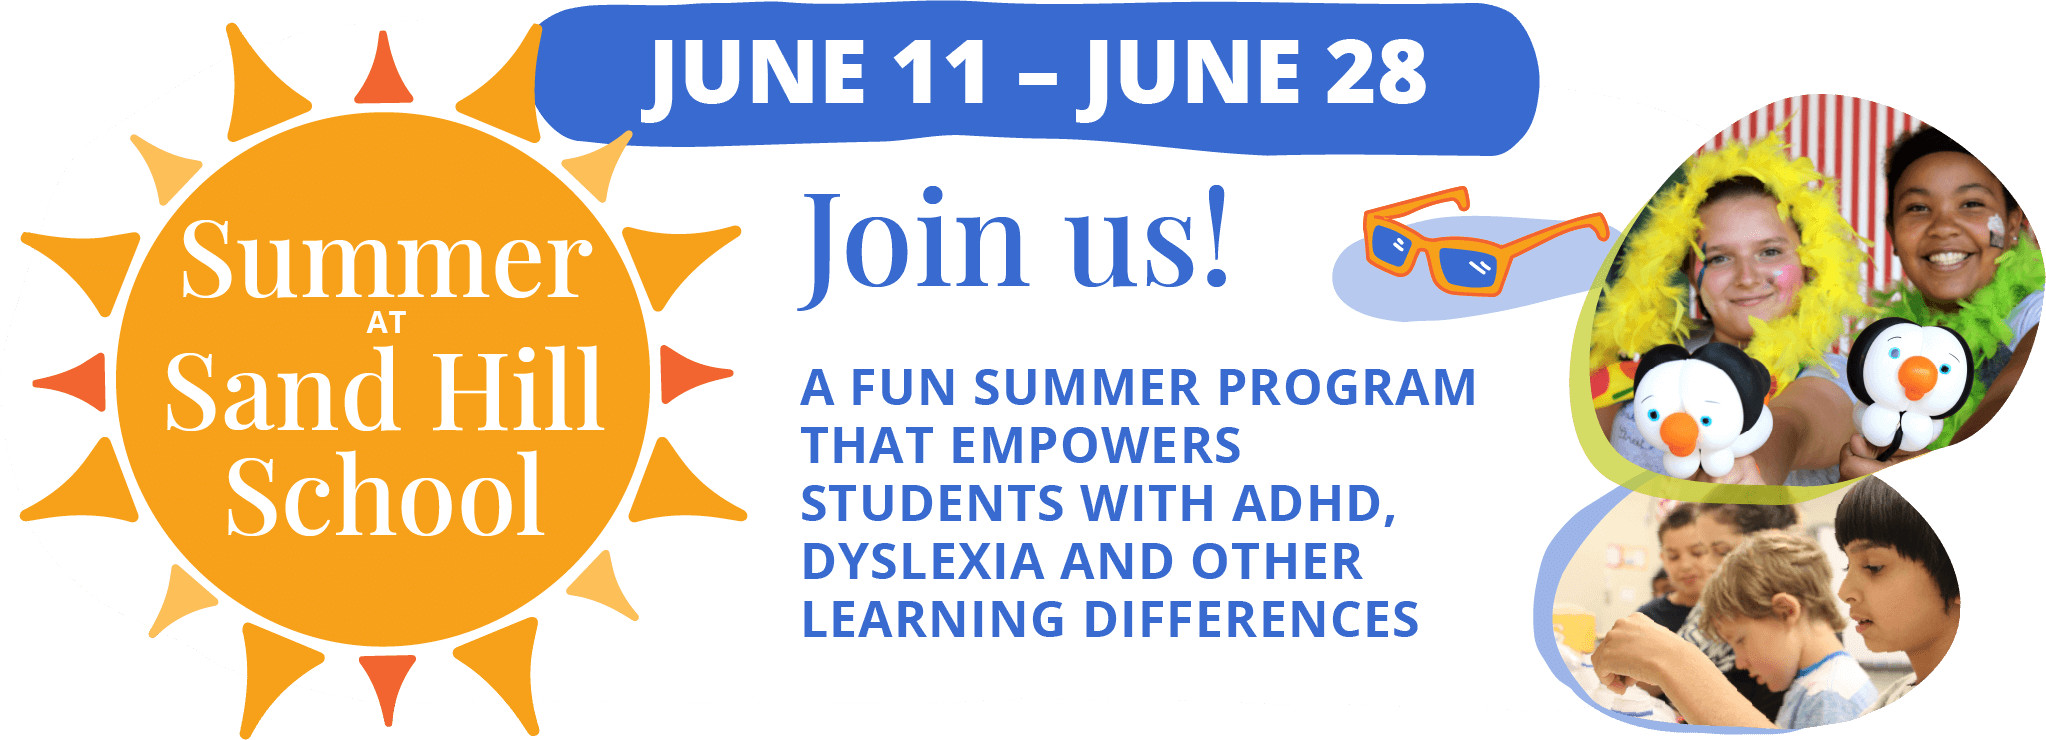 沙山学校的暑假. Join us! 一个有趣的暑期项目，帮助有多动症、阅读障碍和其他学习差异的学生.